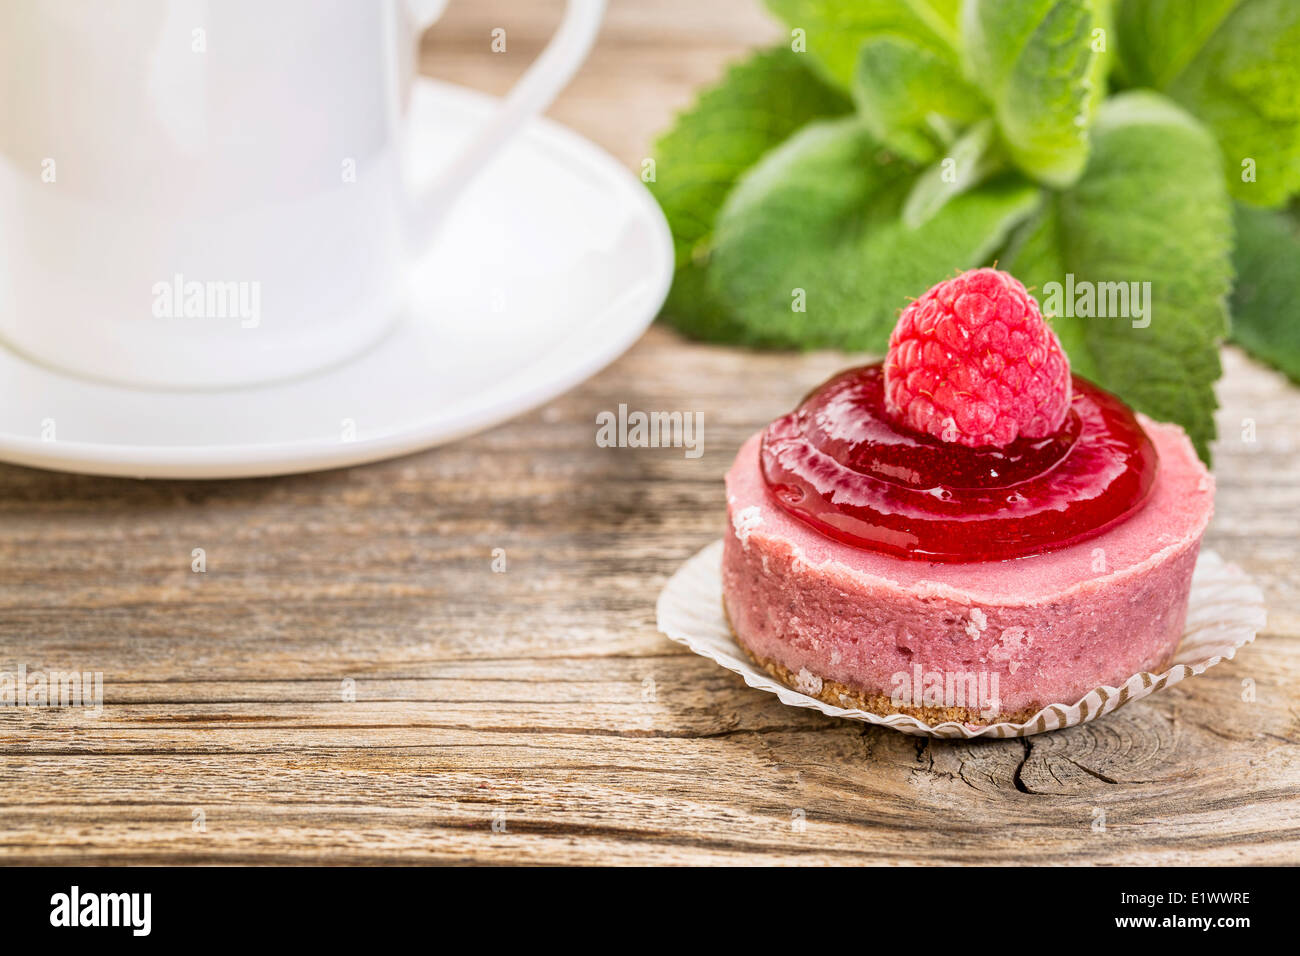 Concept de dessert - Tarte aux framboises avec une tasse de café et des feuilles de menthe poivrée Banque D'Images